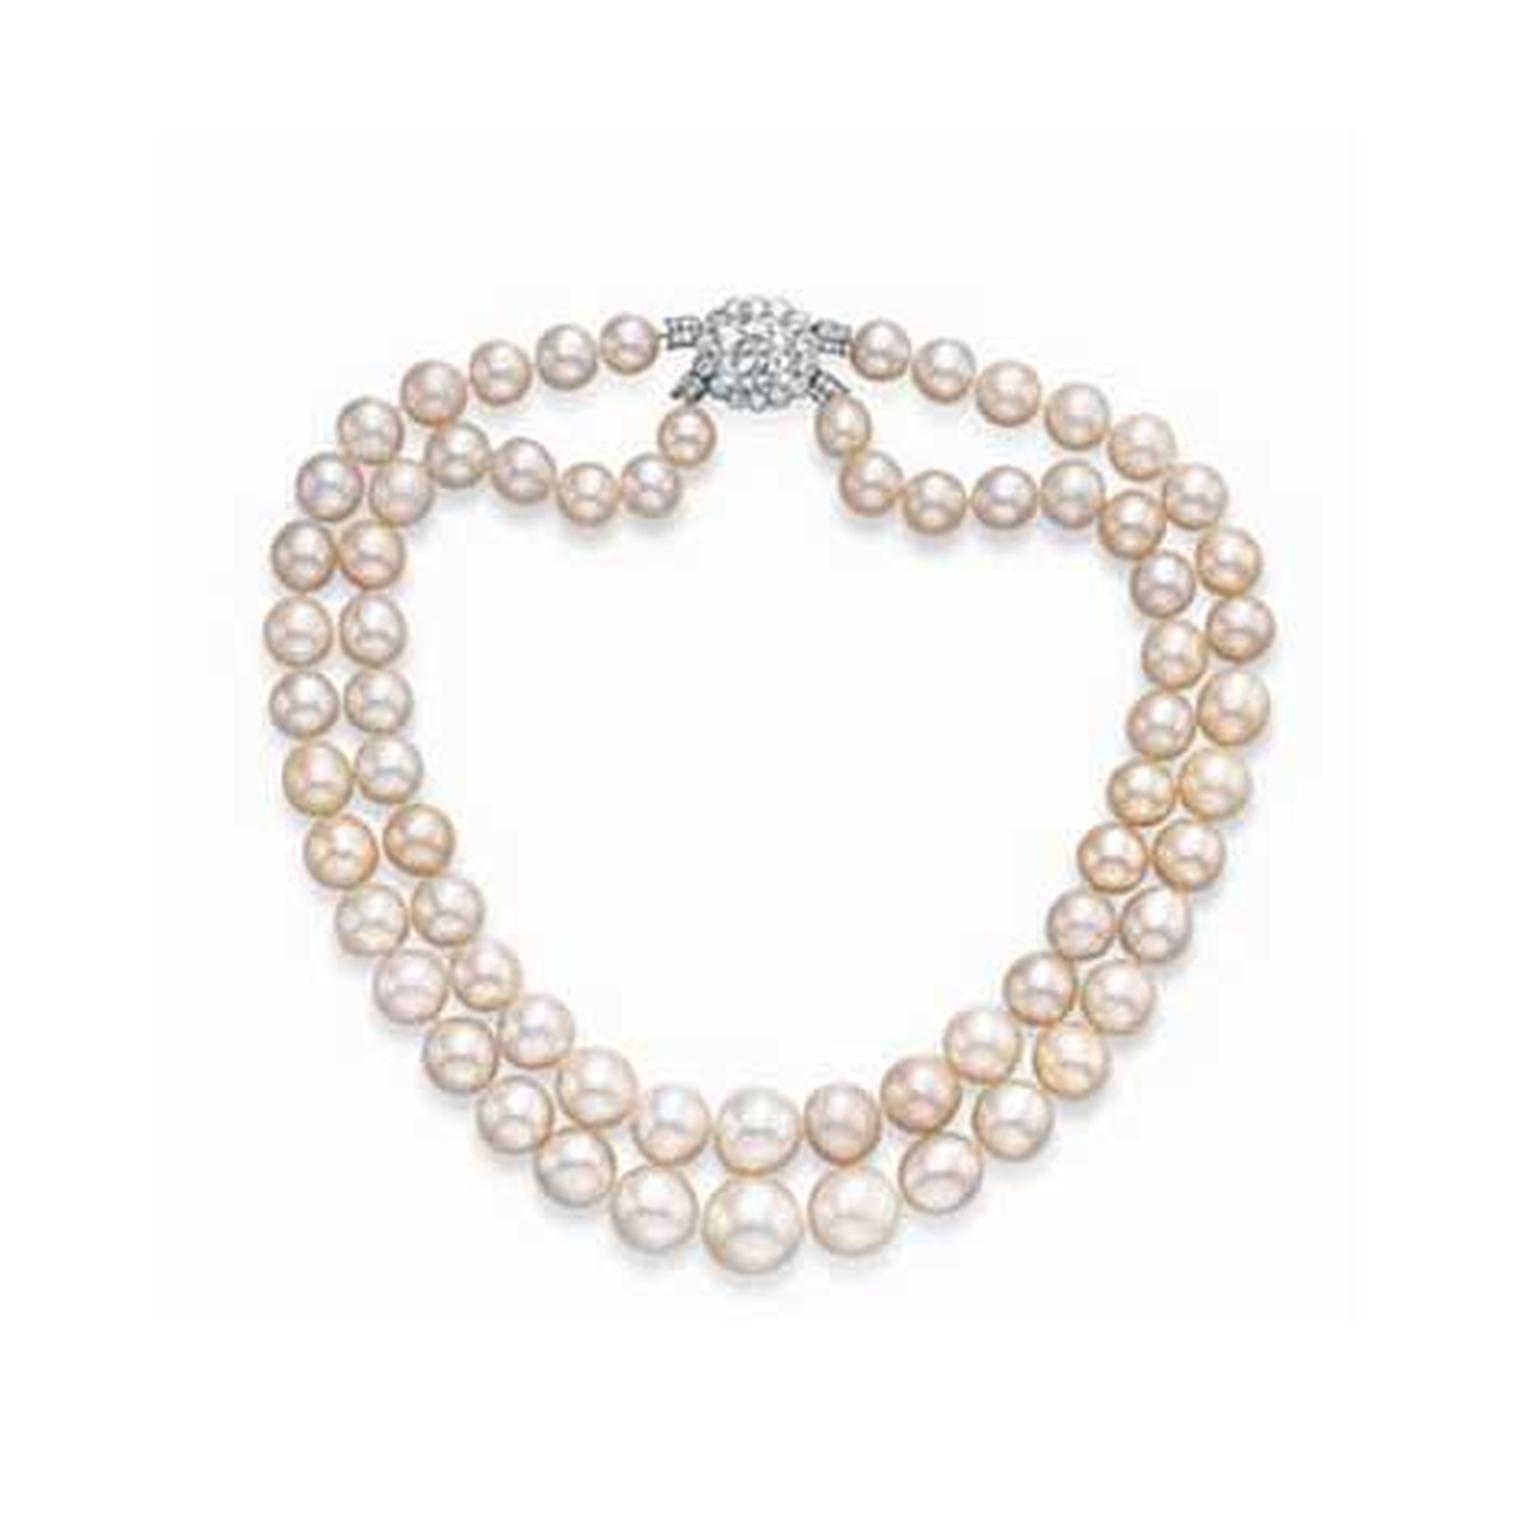 Baroda natural pearl necklace